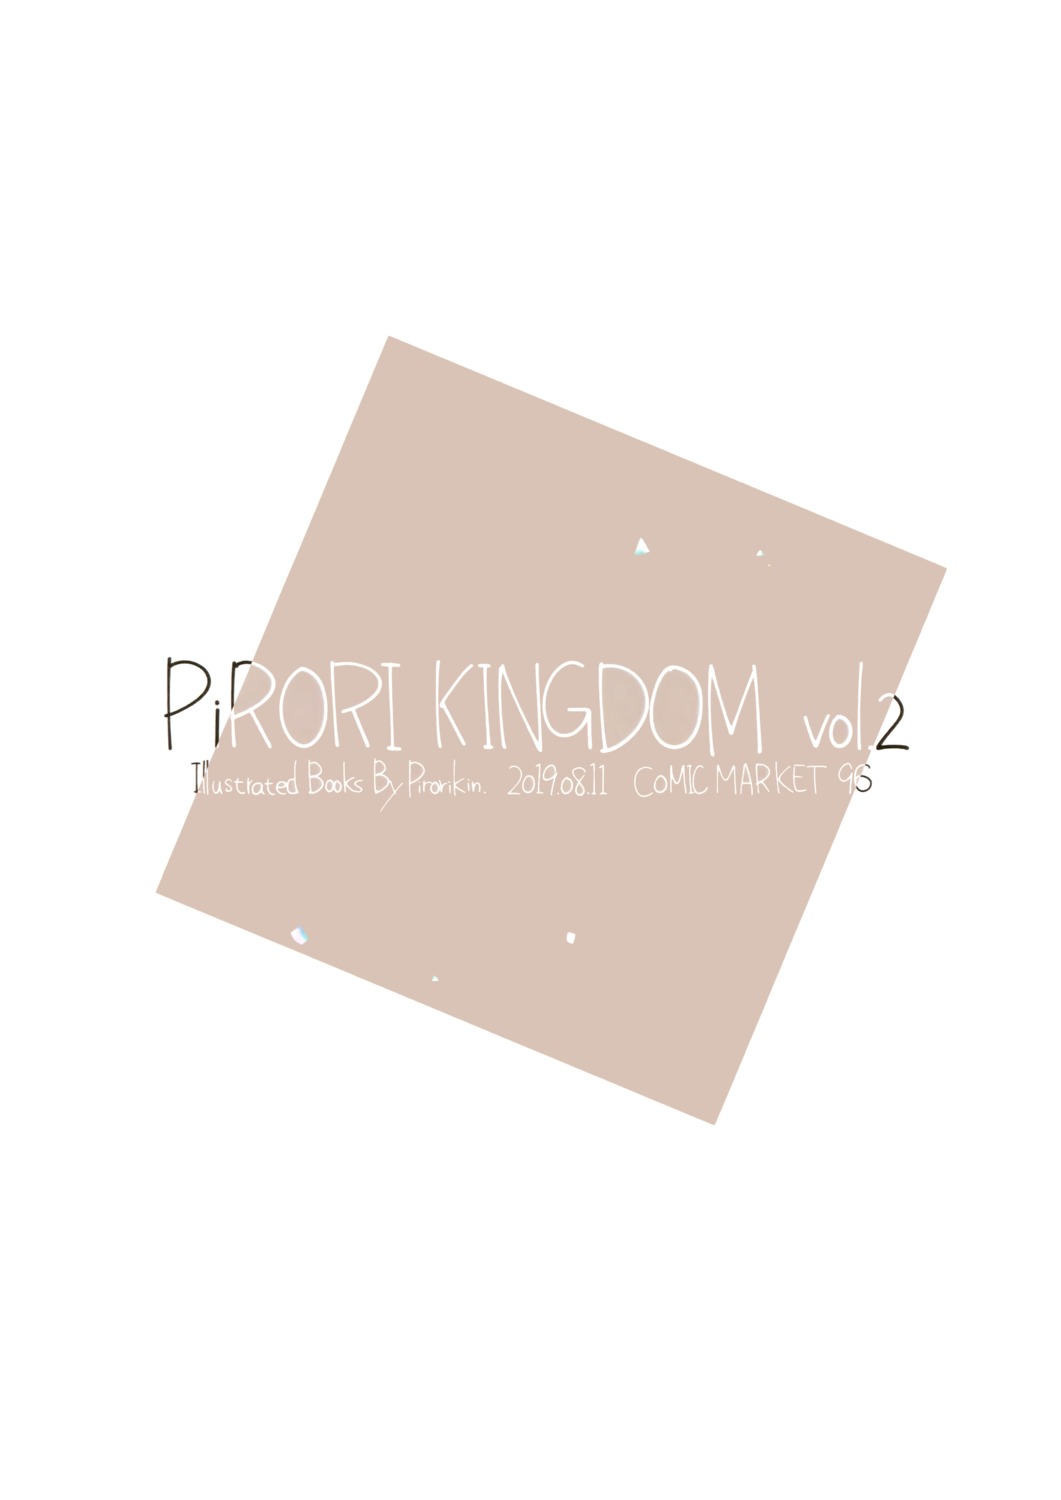 pirori_kingdom pirorikin